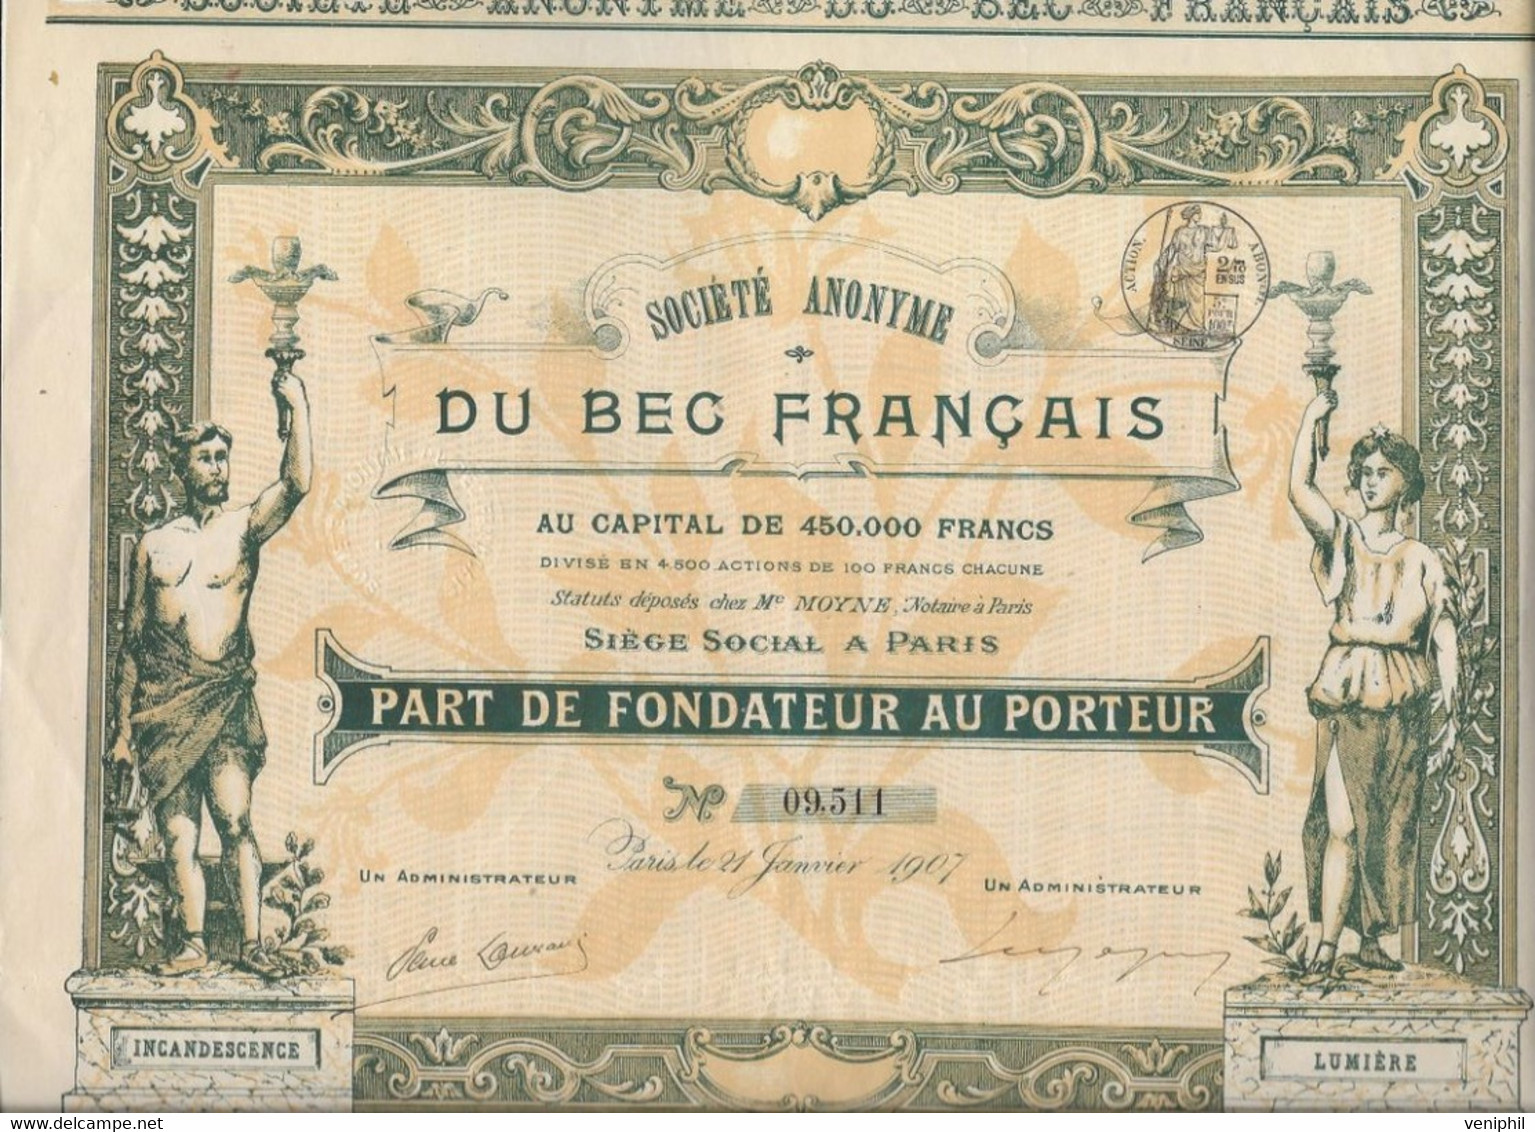 SOCIETE DU BEC FRANCAIS -PART DE FONDATEUR -BELLE ILLUSTRATION - ANNEE 1907 - Electricité & Gaz